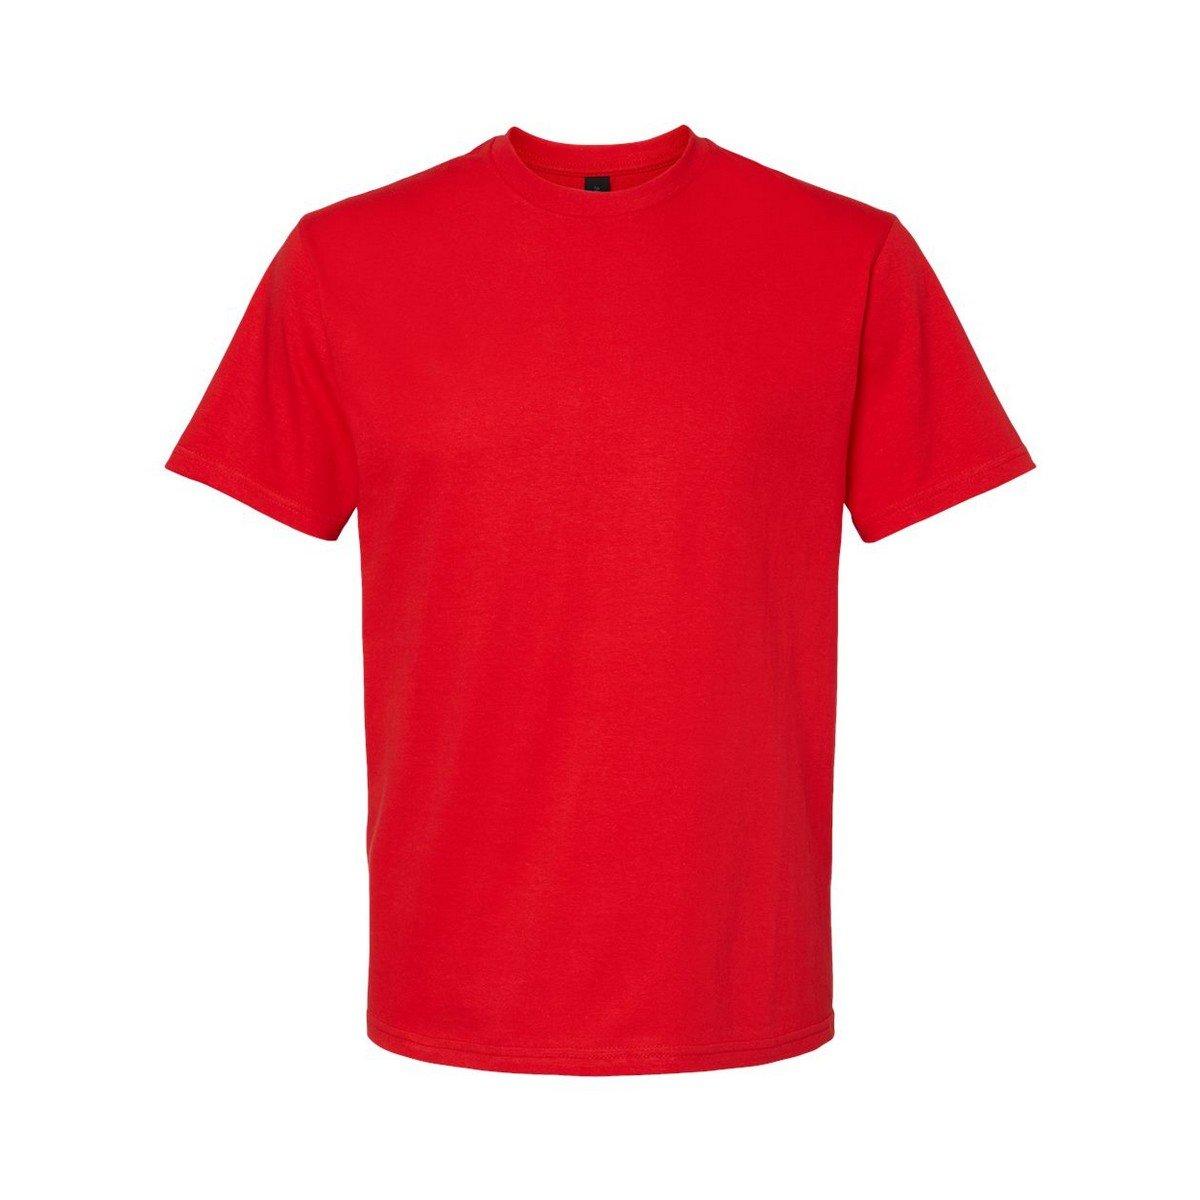 Softstyle Tshirt Mittelschwer Herren Rot Bunt XL von Gildan